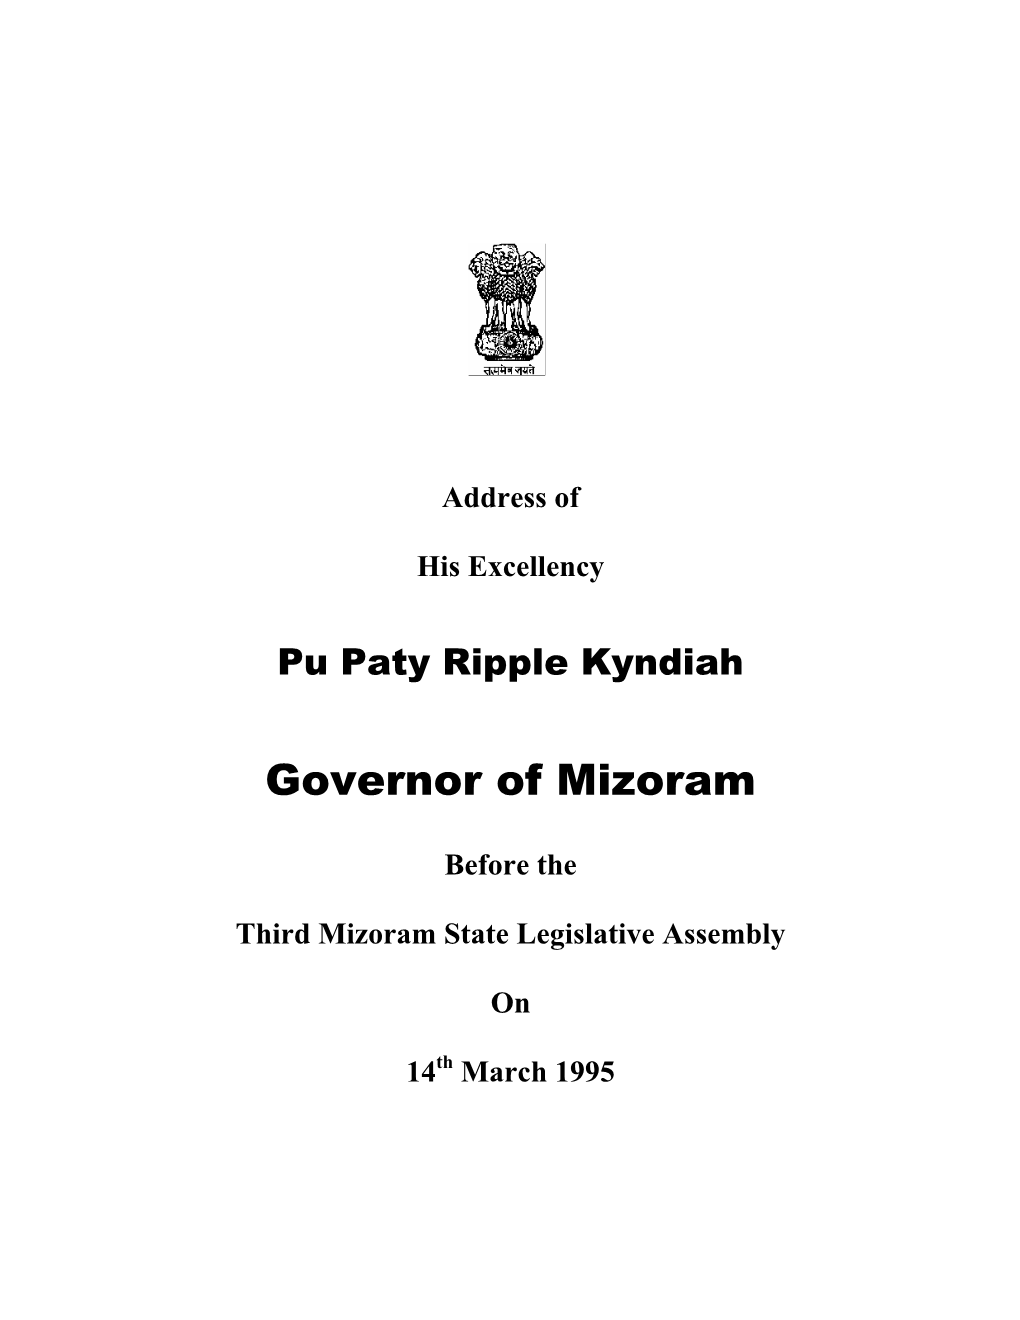 Governor of Mizoram